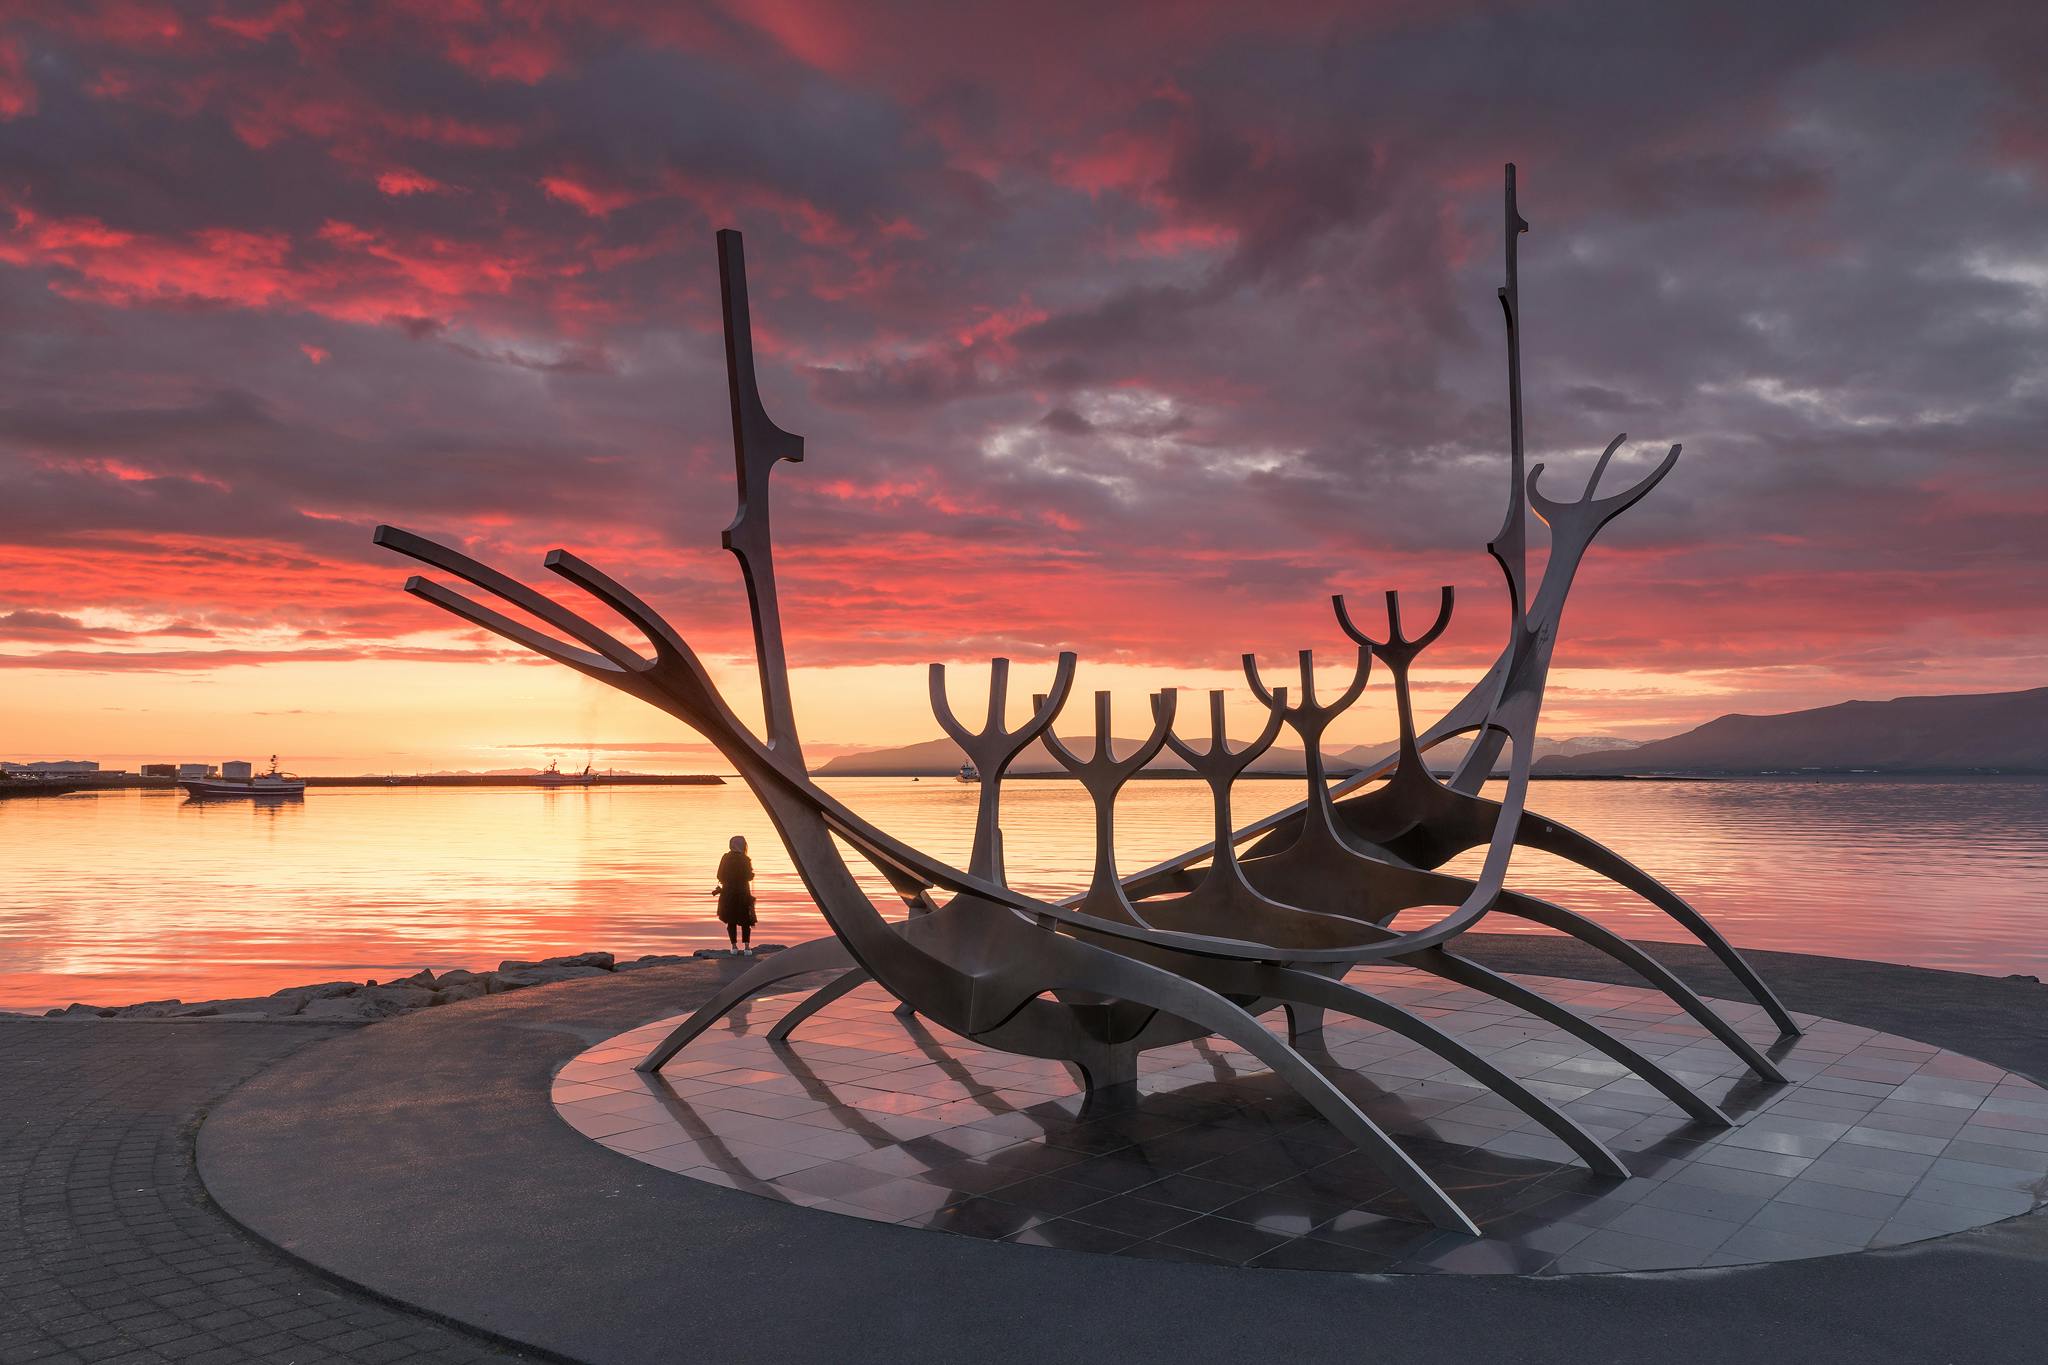 Nie przegap okazji do zrobienia zdjęcia z potężną rzeźbą Sun Voyager na wybrzeżu Reykjaviku.